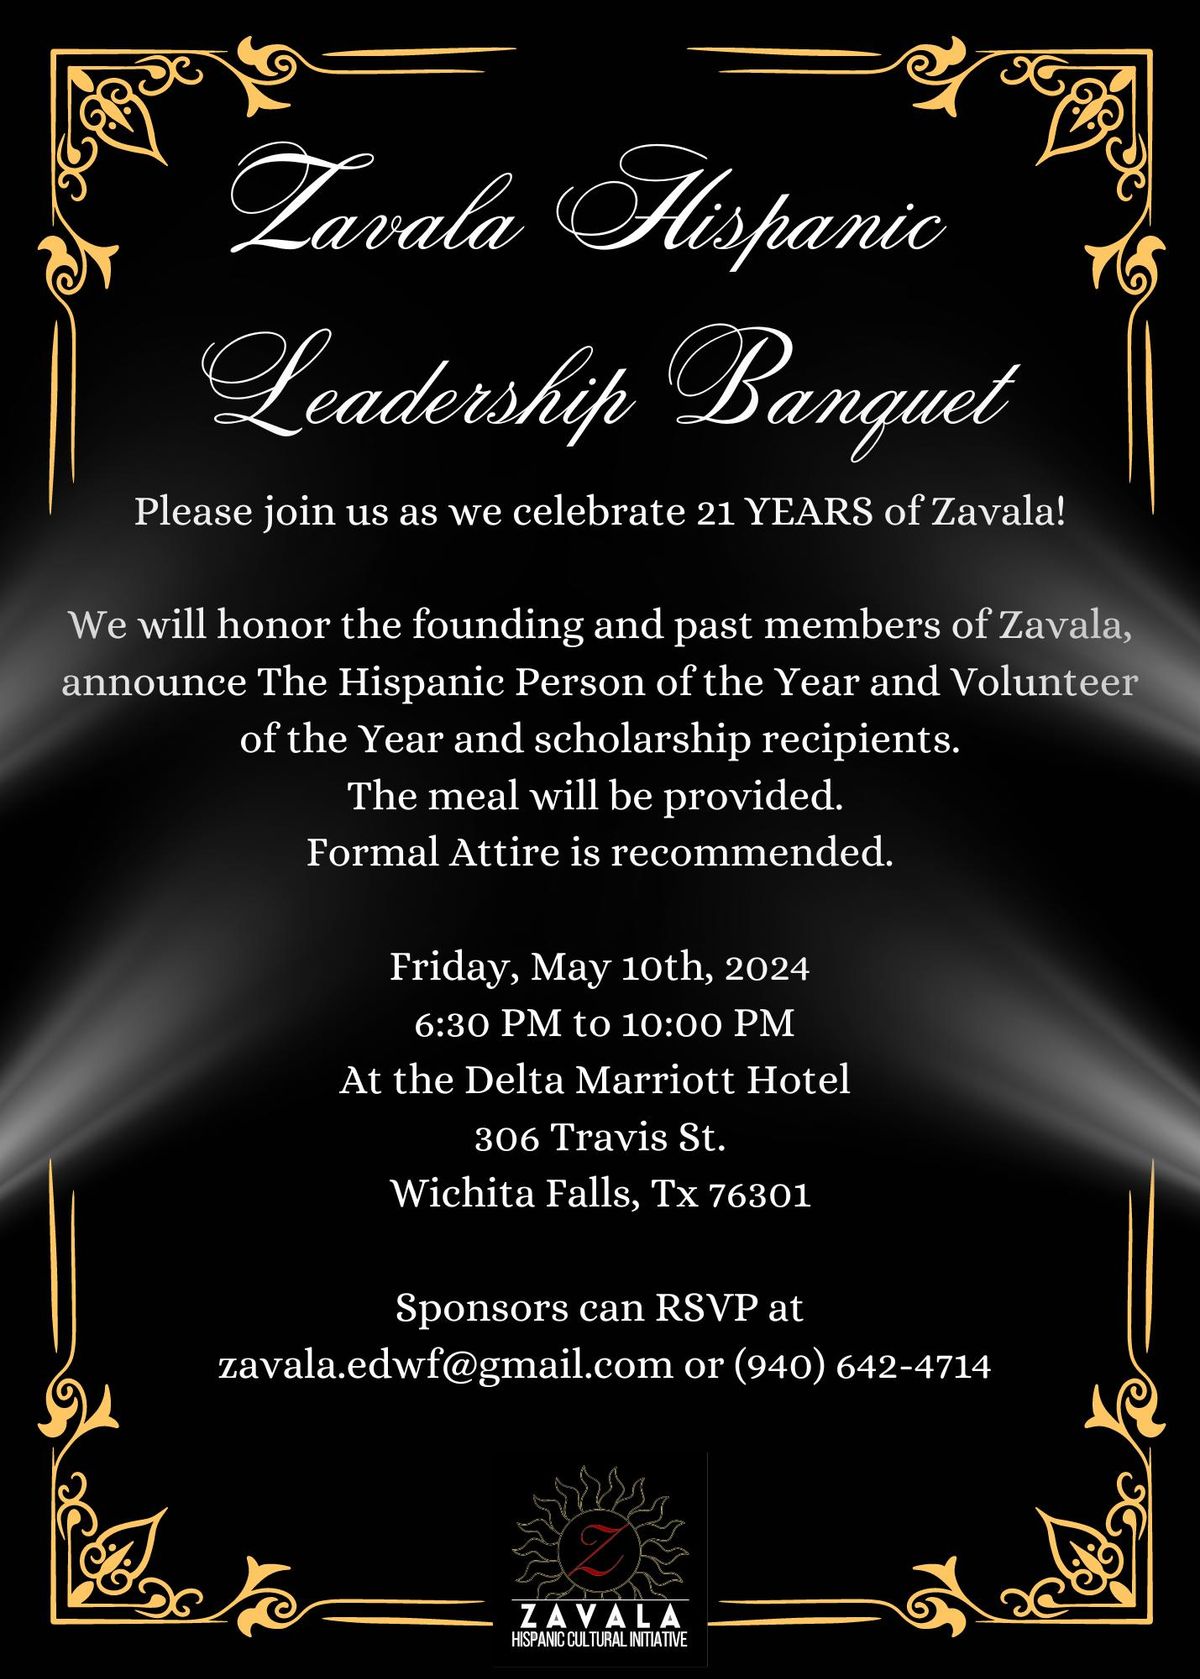 Zavala Hispanic Leadership Banquet